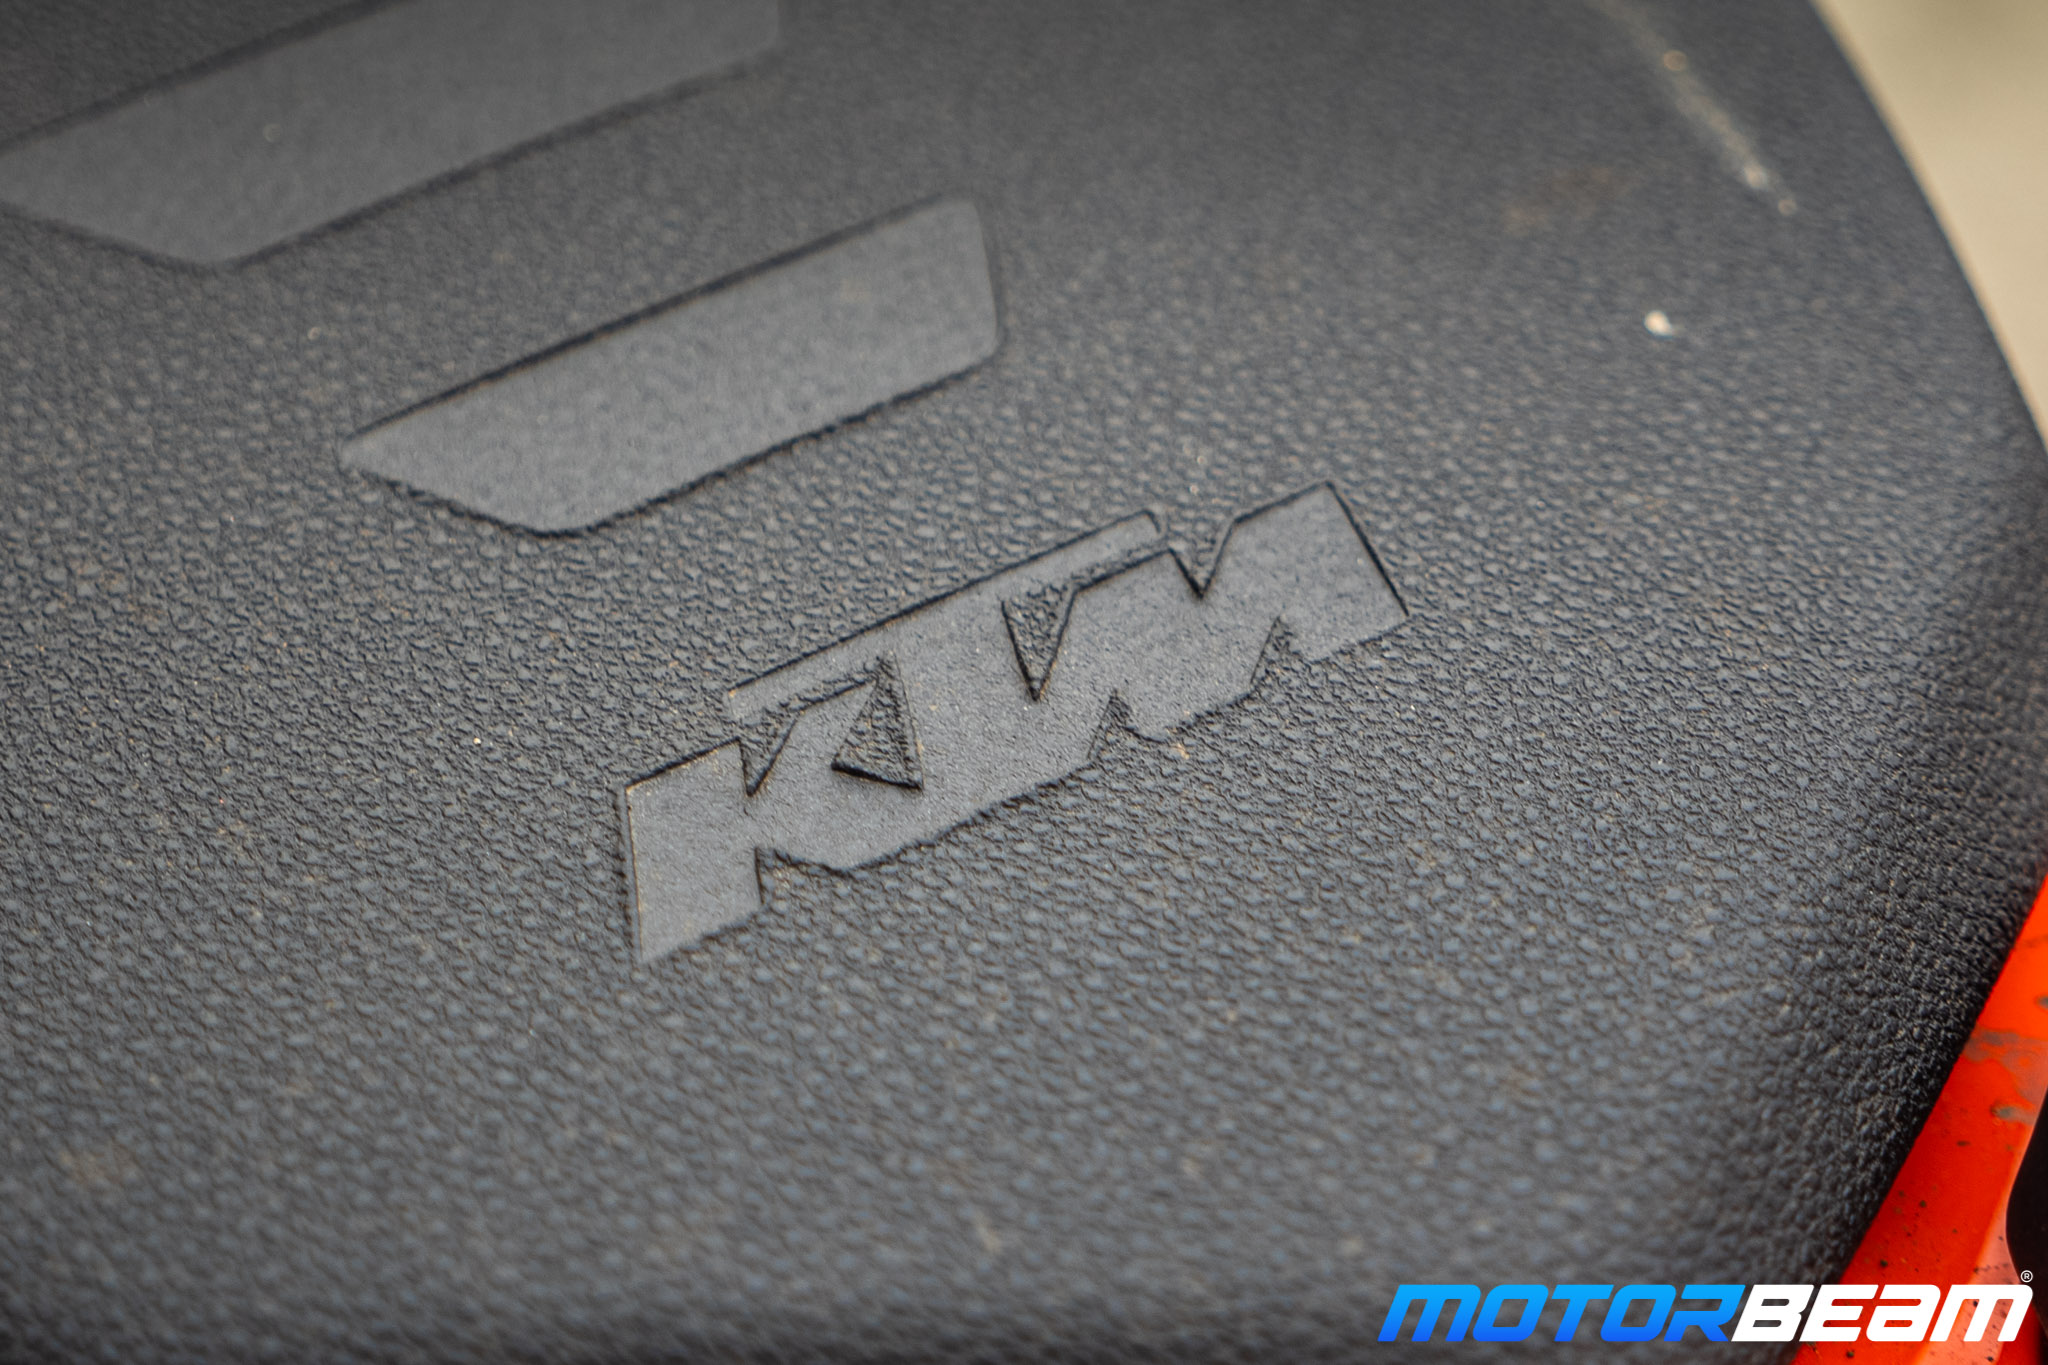 2021 KTM 250 Adventure Review 14